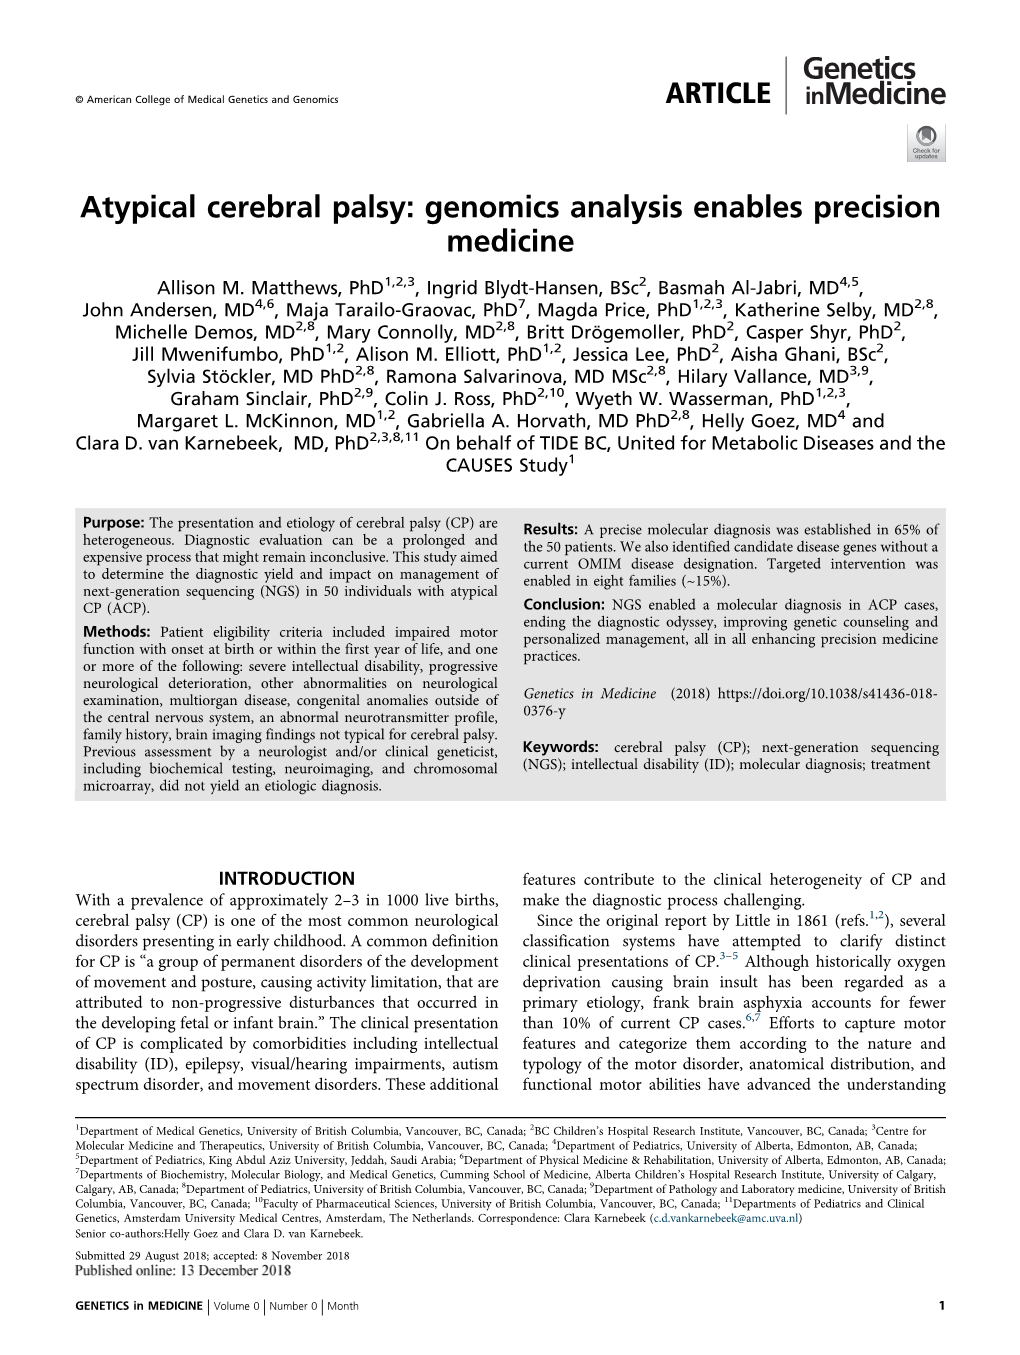 Atypical Cerebral Palsy: Genomics Analysis Enables Precision Medicine